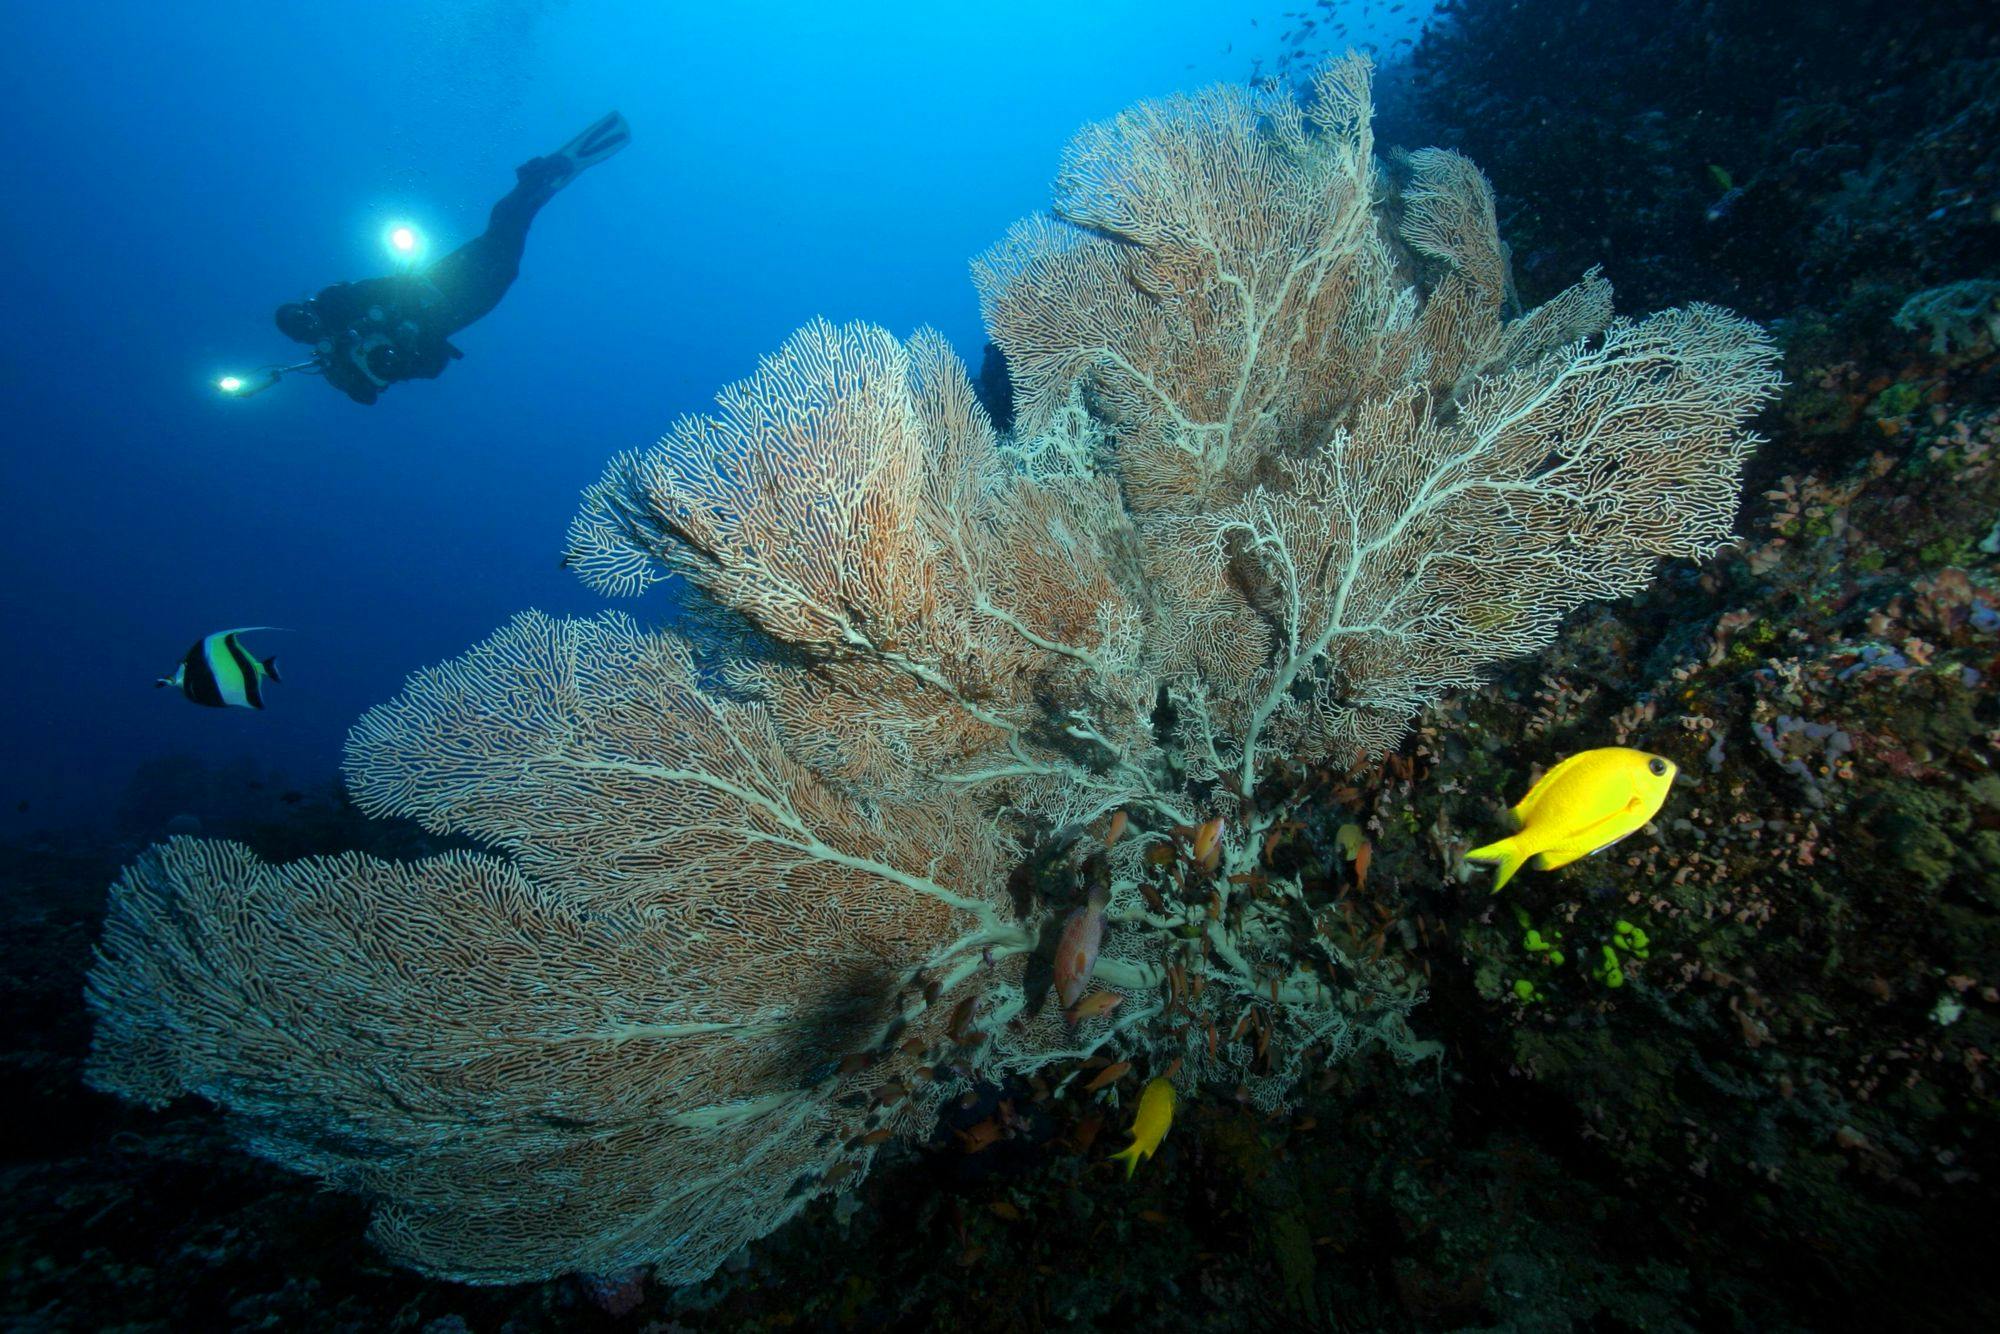 Atlantis Azores Liveaboard - Apo Reef & Wrecks of Coron